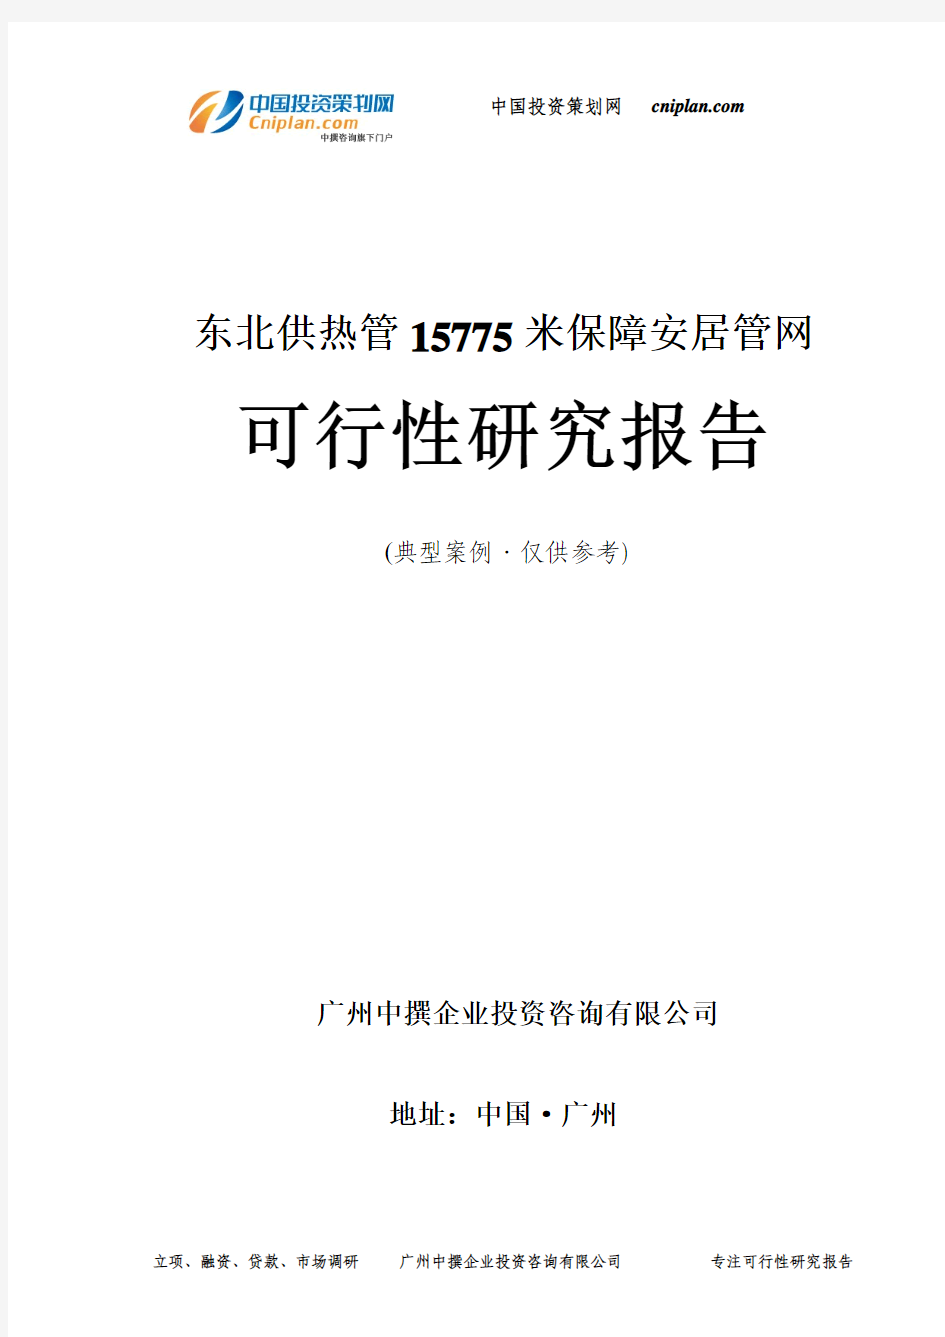 东北供热管15775米保障安居管网可行性研究报告-广州中撰咨询